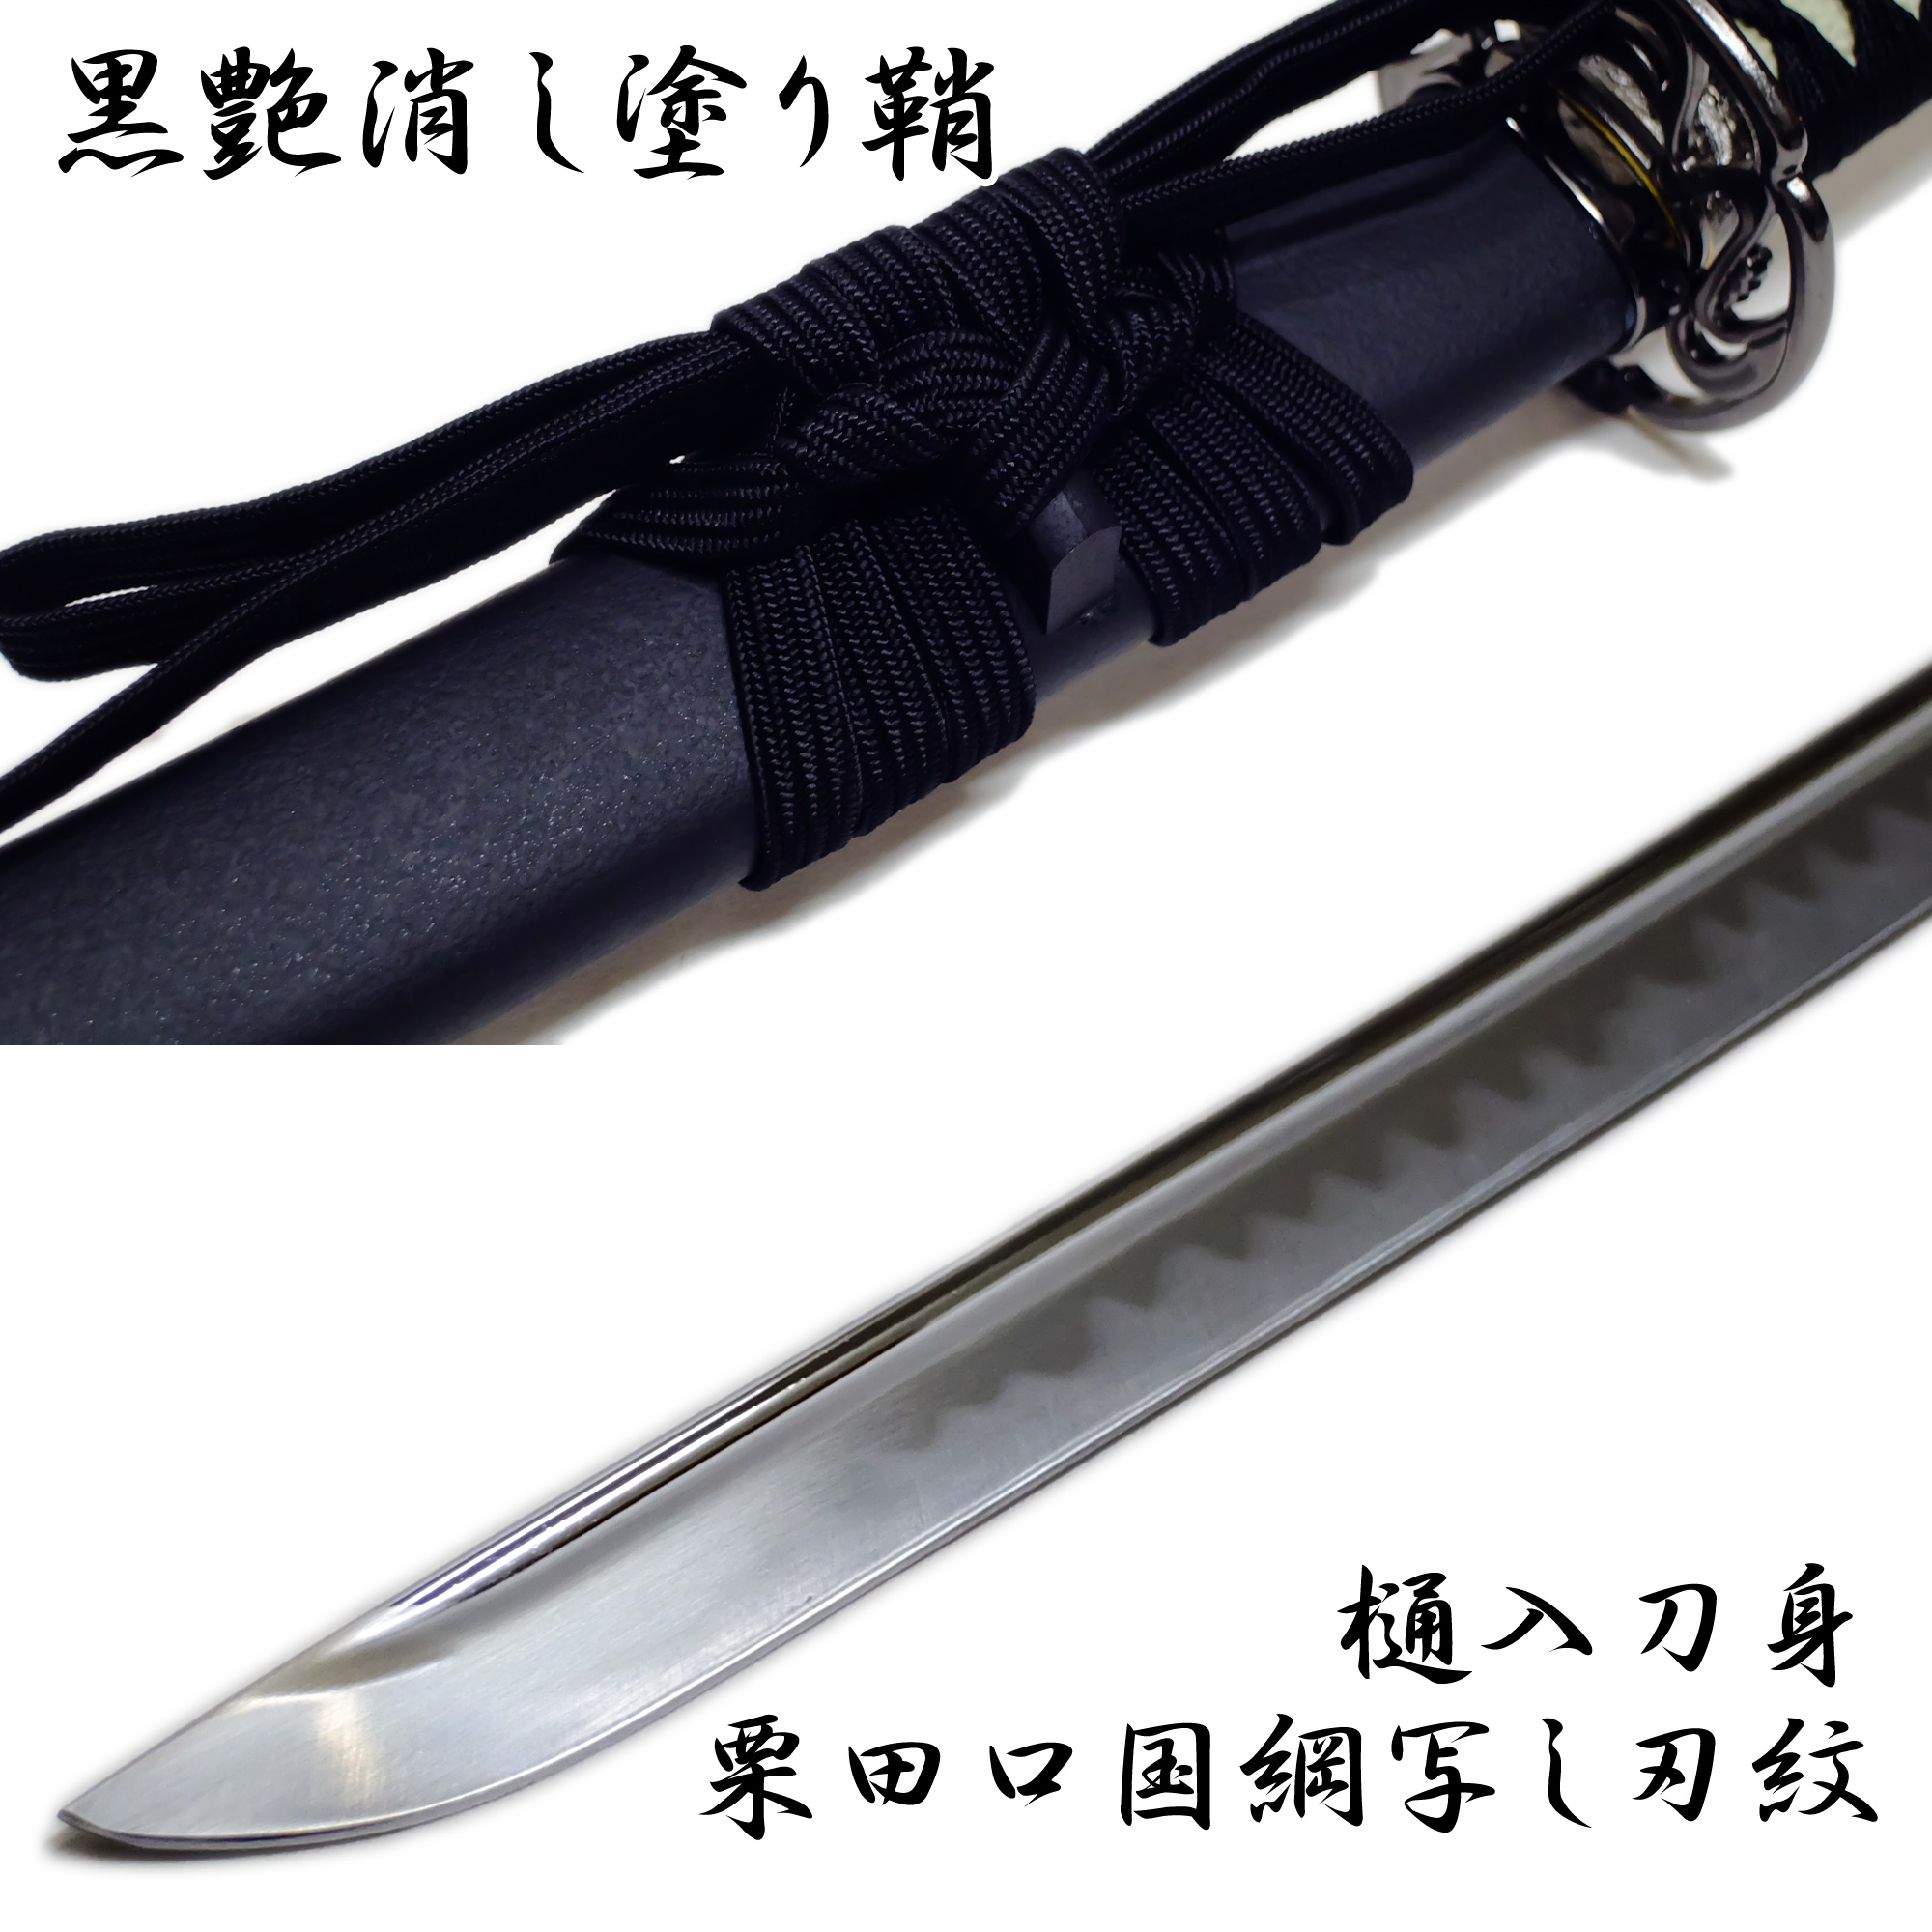 匠刀房 長谷川平蔵 NEU-119D - 大刀 模造刀